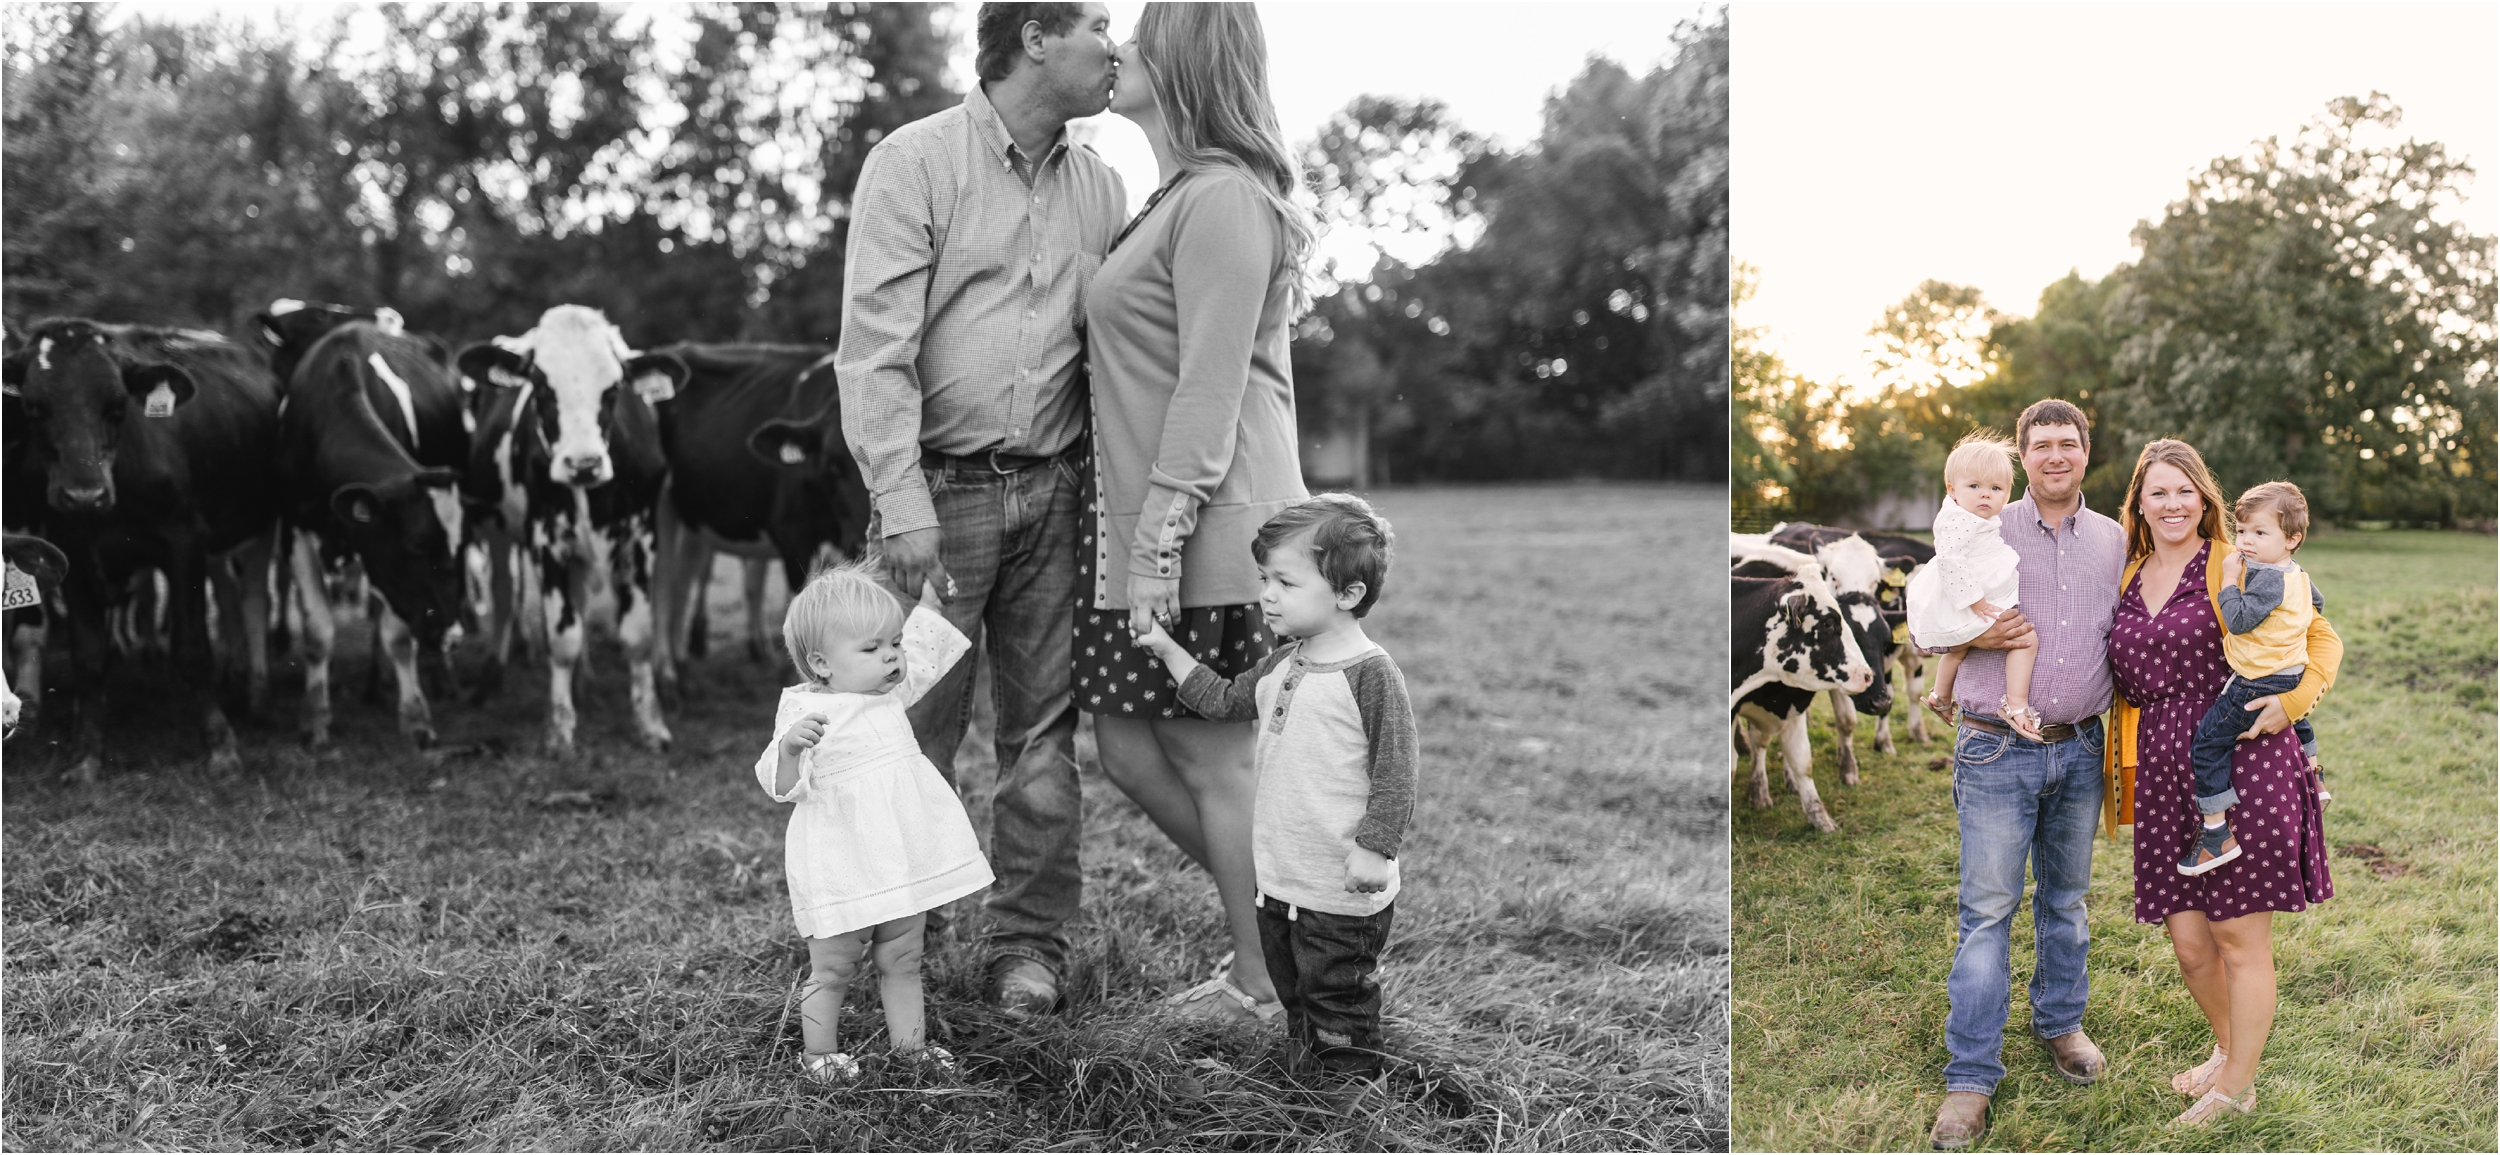 Farm Family Session_Midwest Wedding Photographer_Stephanie Lynn Photography_0072.jpg